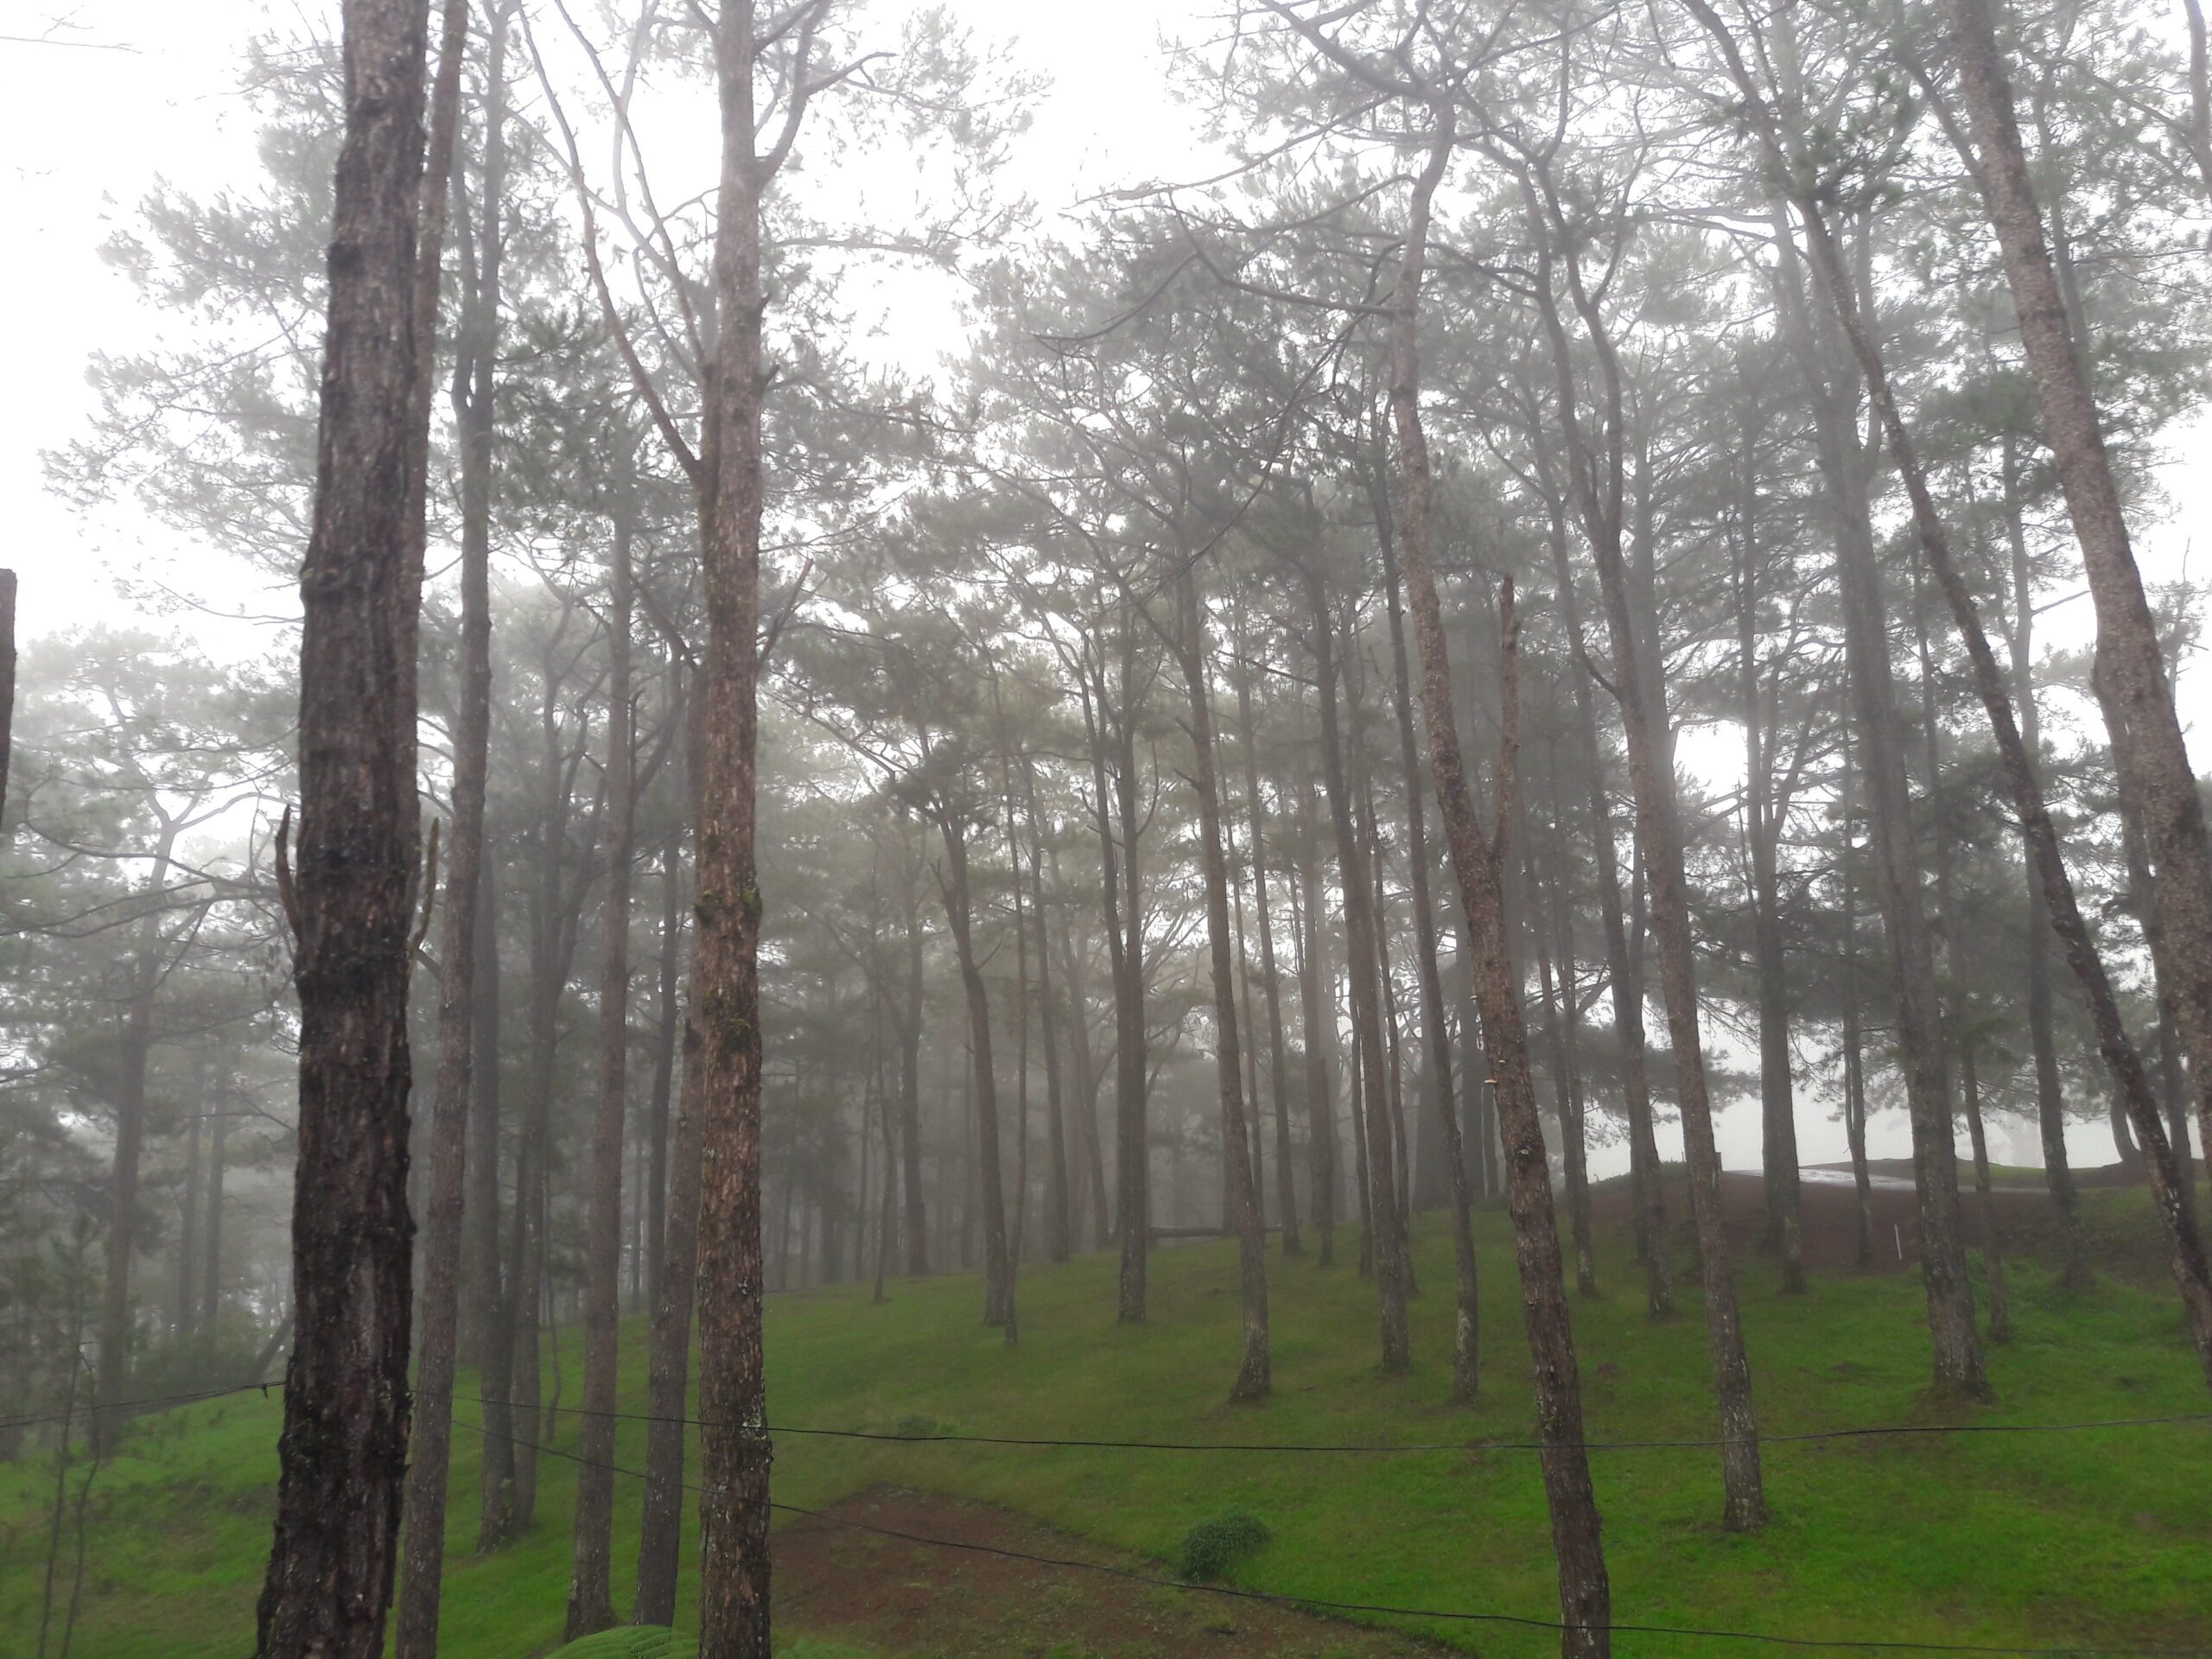 Magalong wants ‘aggressive’ regreening of Baguio